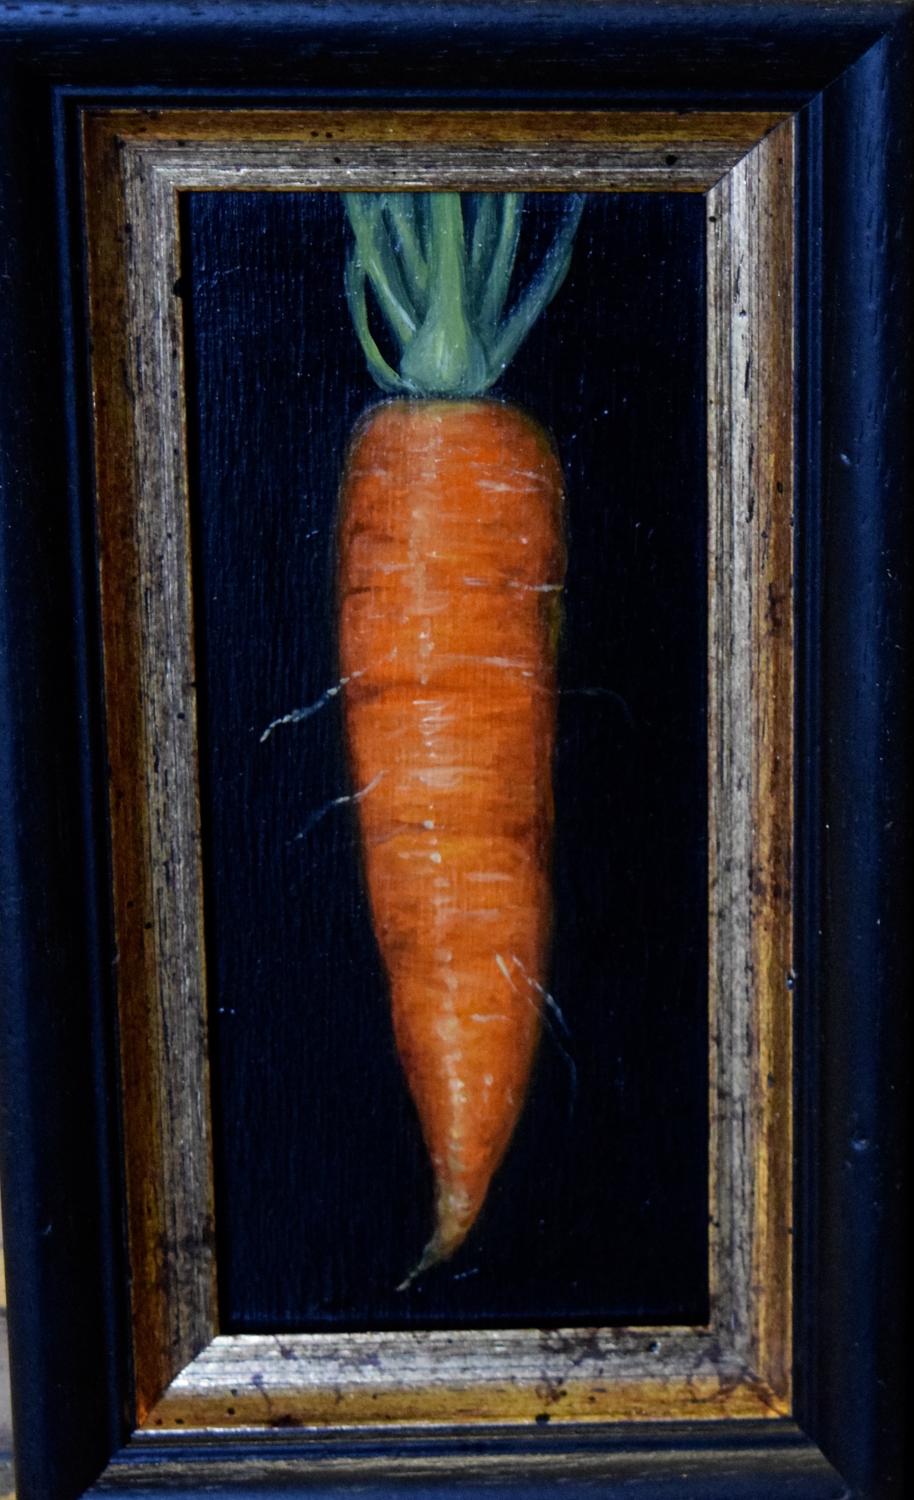 Carrot